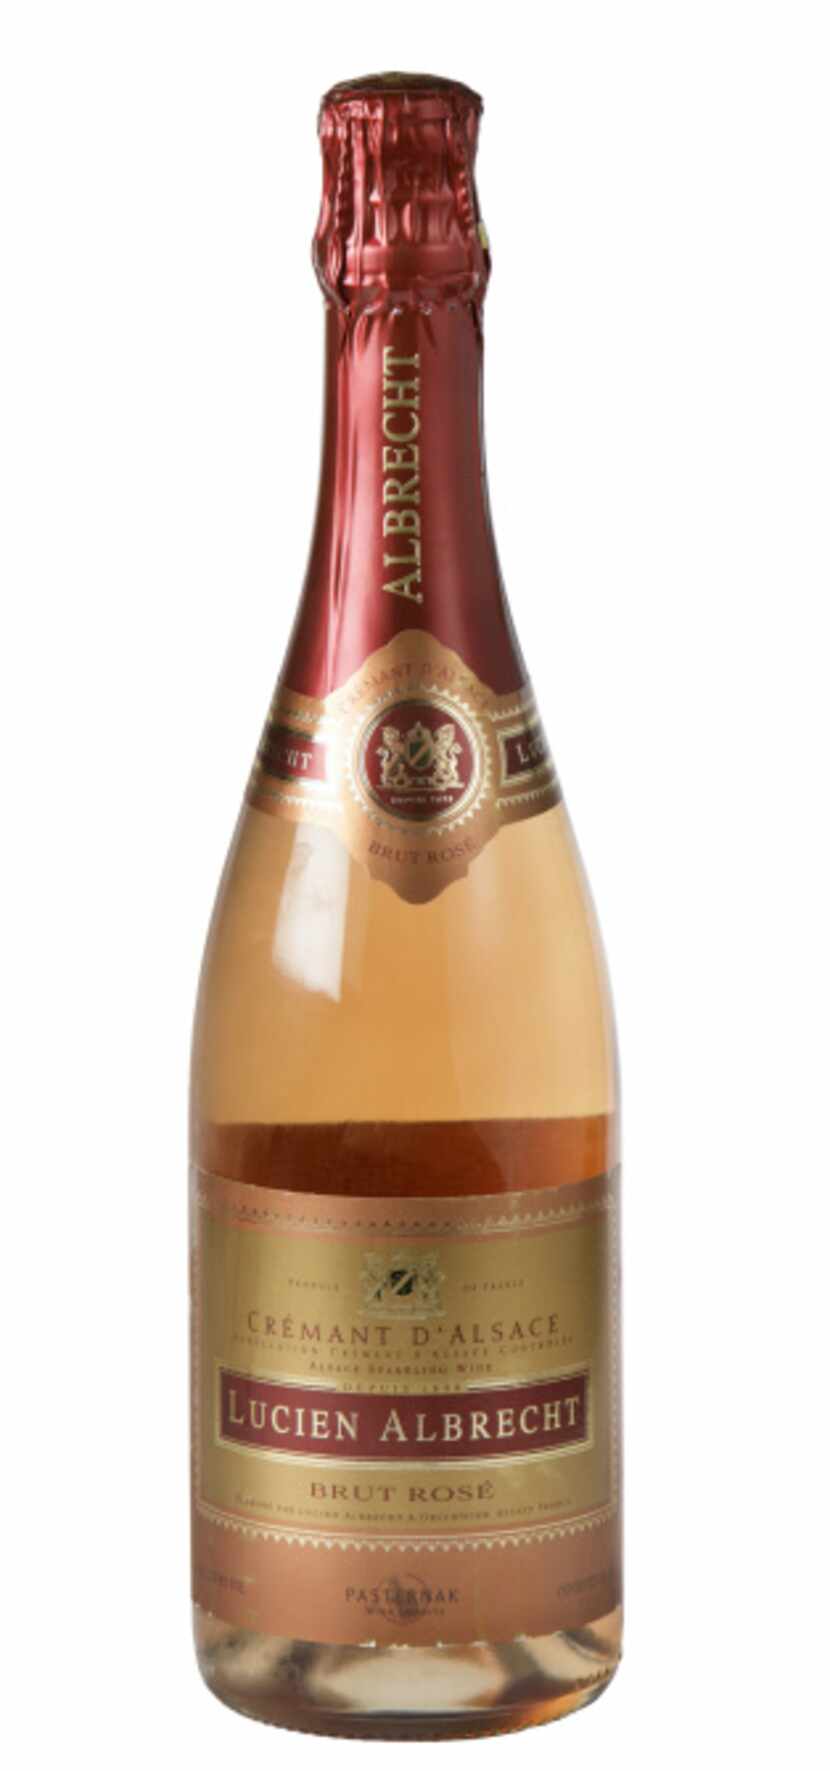 Lucien Albrecht Crémant d’Alsace Rosé, NV, France.
$19.79 to $22.99; Pogo’s, Spec’s, select...